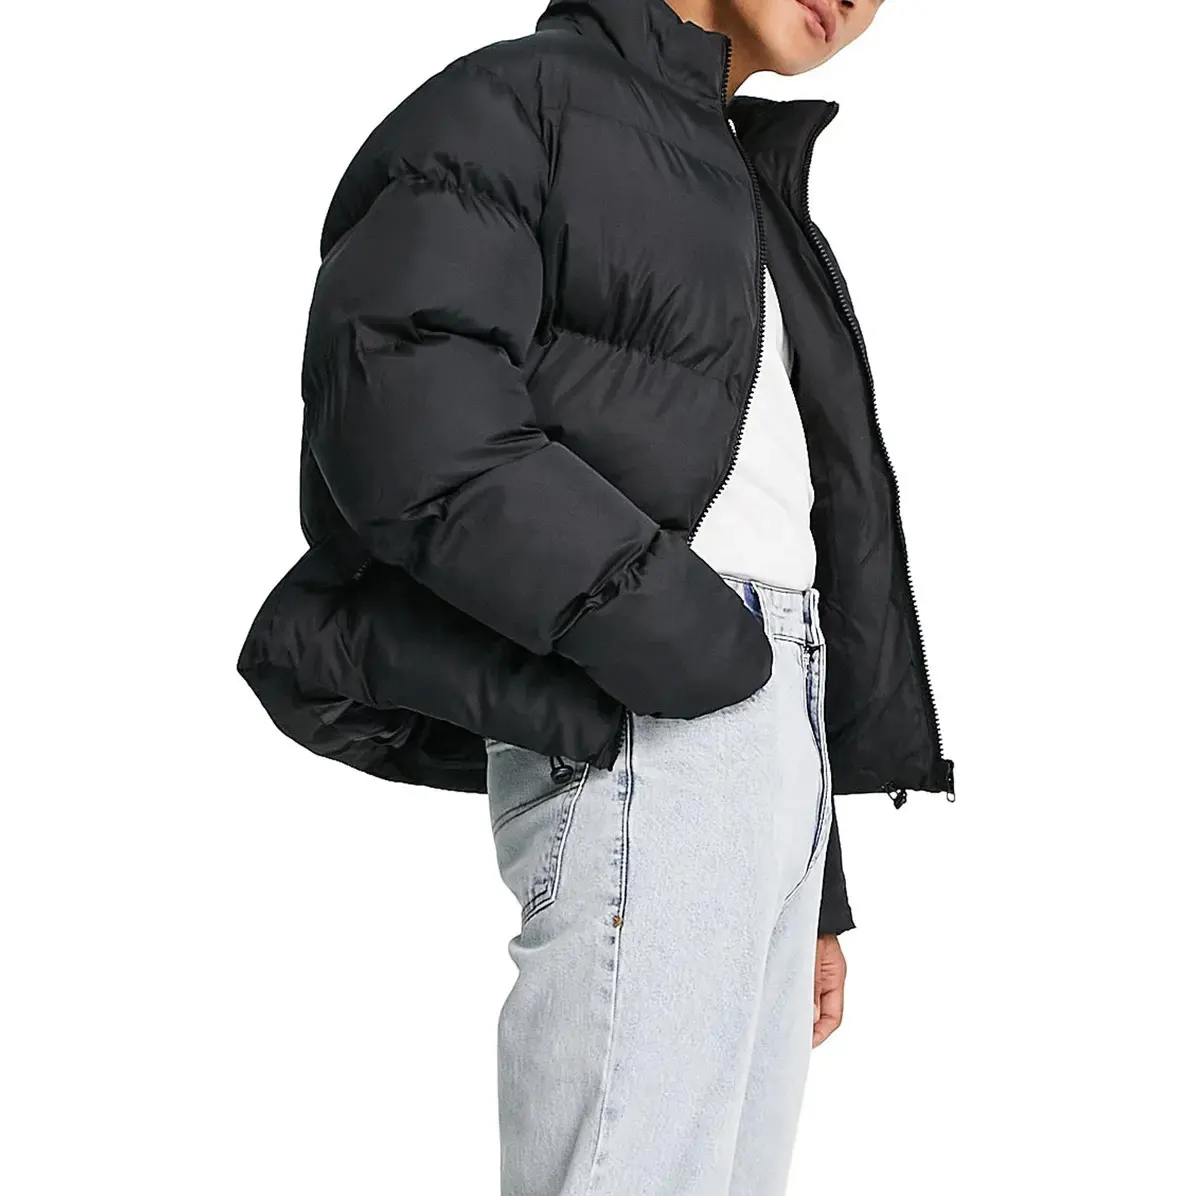 Yeni marka özel erkekler için balon ceket lüks yüksek kalite Ultralight balon ceket erkekler son tasarım giymek